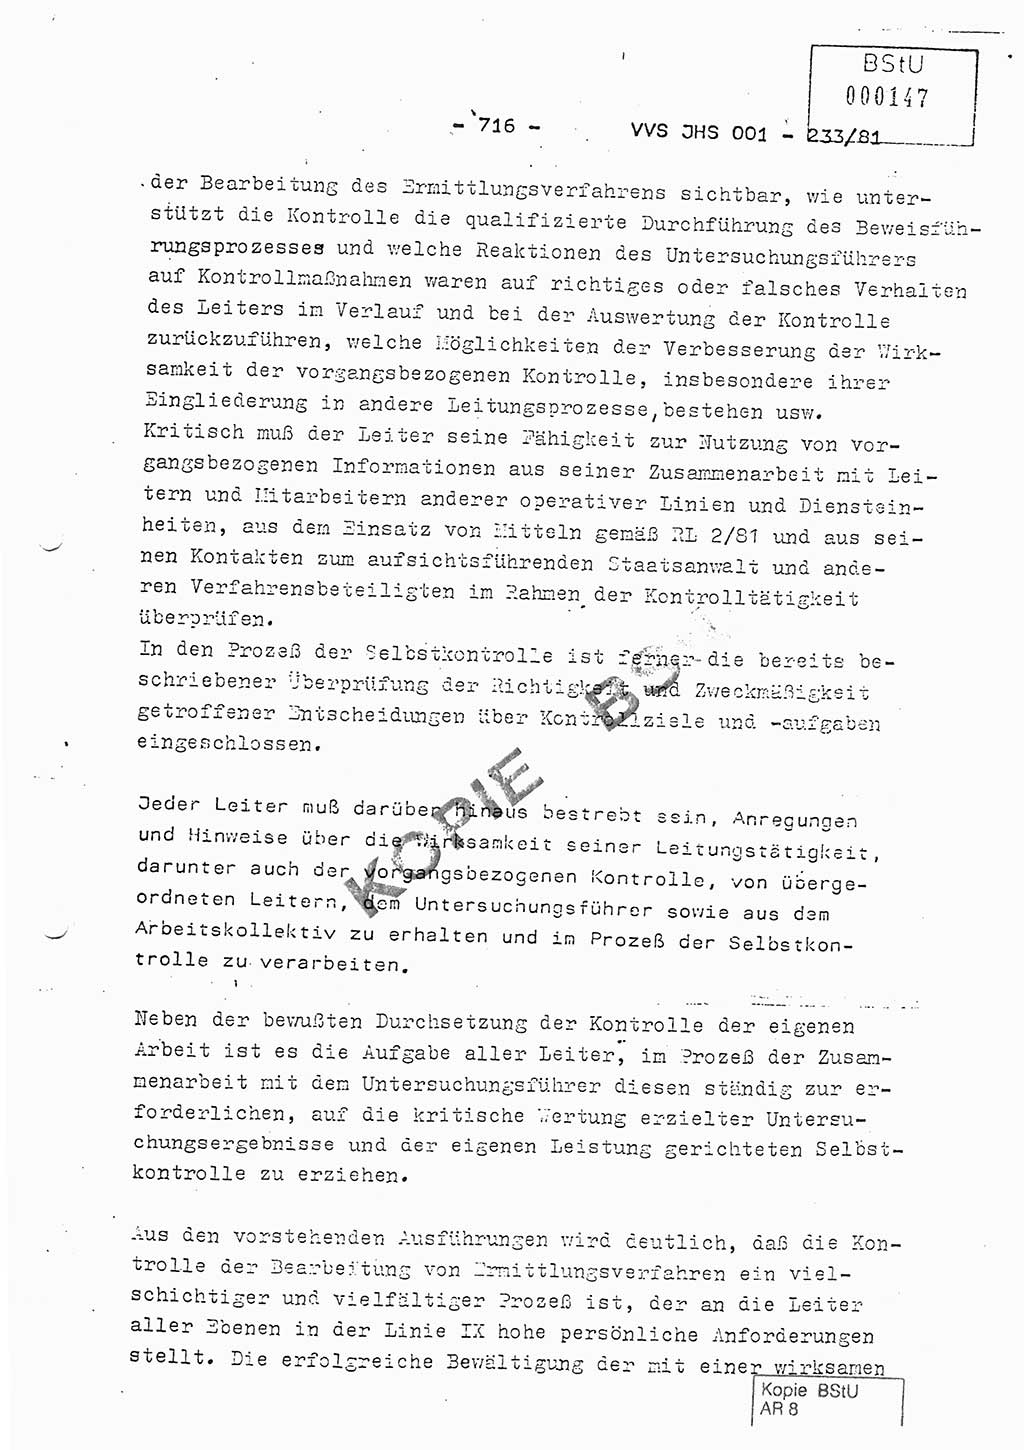 Dissertation Oberstleutnant Horst Zank (JHS), Oberstleutnant Dr. Karl-Heinz Knoblauch (JHS), Oberstleutnant Gustav-Adolf Kowalewski (HA Ⅸ), Oberstleutnant Wolfgang Plötner (HA Ⅸ), Ministerium für Staatssicherheit (MfS) [Deutsche Demokratische Republik (DDR)], Juristische Hochschule (JHS), Vertrauliche Verschlußsache (VVS) o001-233/81, Potsdam 1981, Blatt 716 (Diss. MfS DDR JHS VVS o001-233/81 1981, Bl. 716)